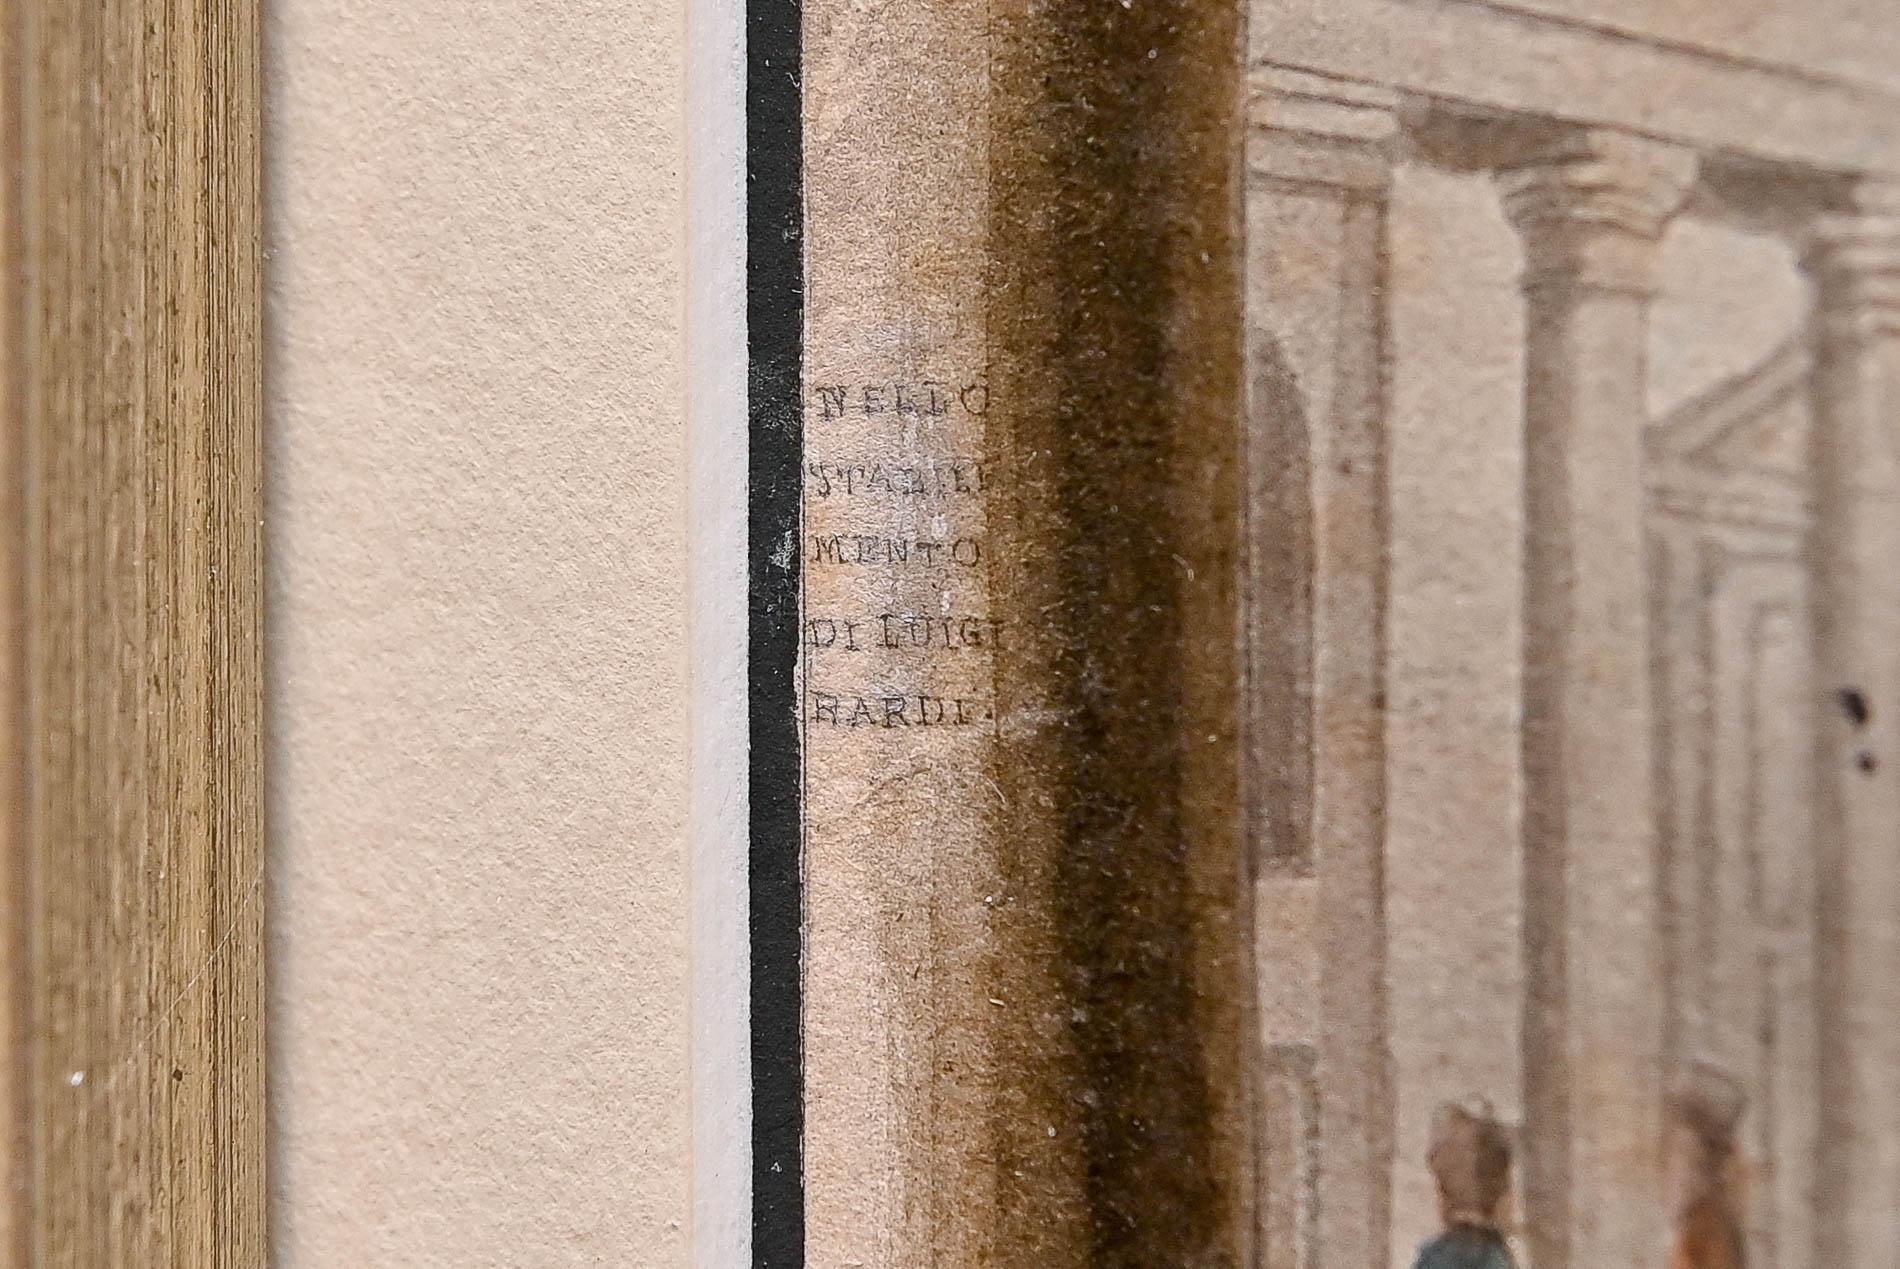 Architektonische Ansicht der Uffizien in Florenz, Aquarell auf Papier, nicht signiert.
Das feine Aquarell in zarten Braun-, Blau- und Grautönen zeigt eine lebendige Straßenszene mit Menschen, die durch den Torbogen auf die Fassade der Uffizien